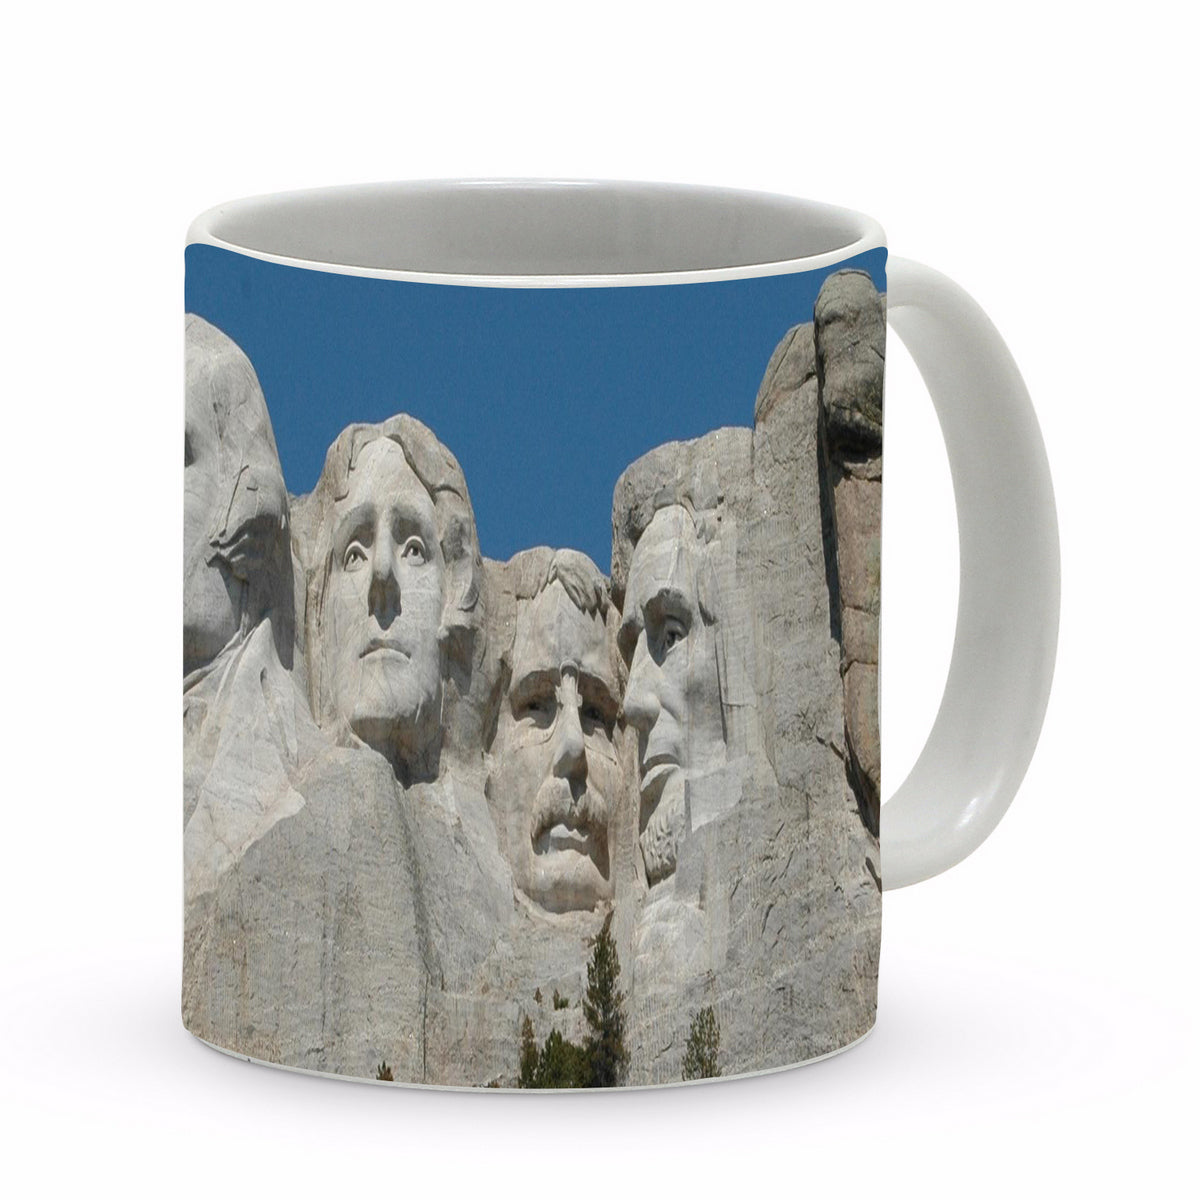 SUBLIMART: Patriotic Mug 'Mount Rushmore' (Design 18)